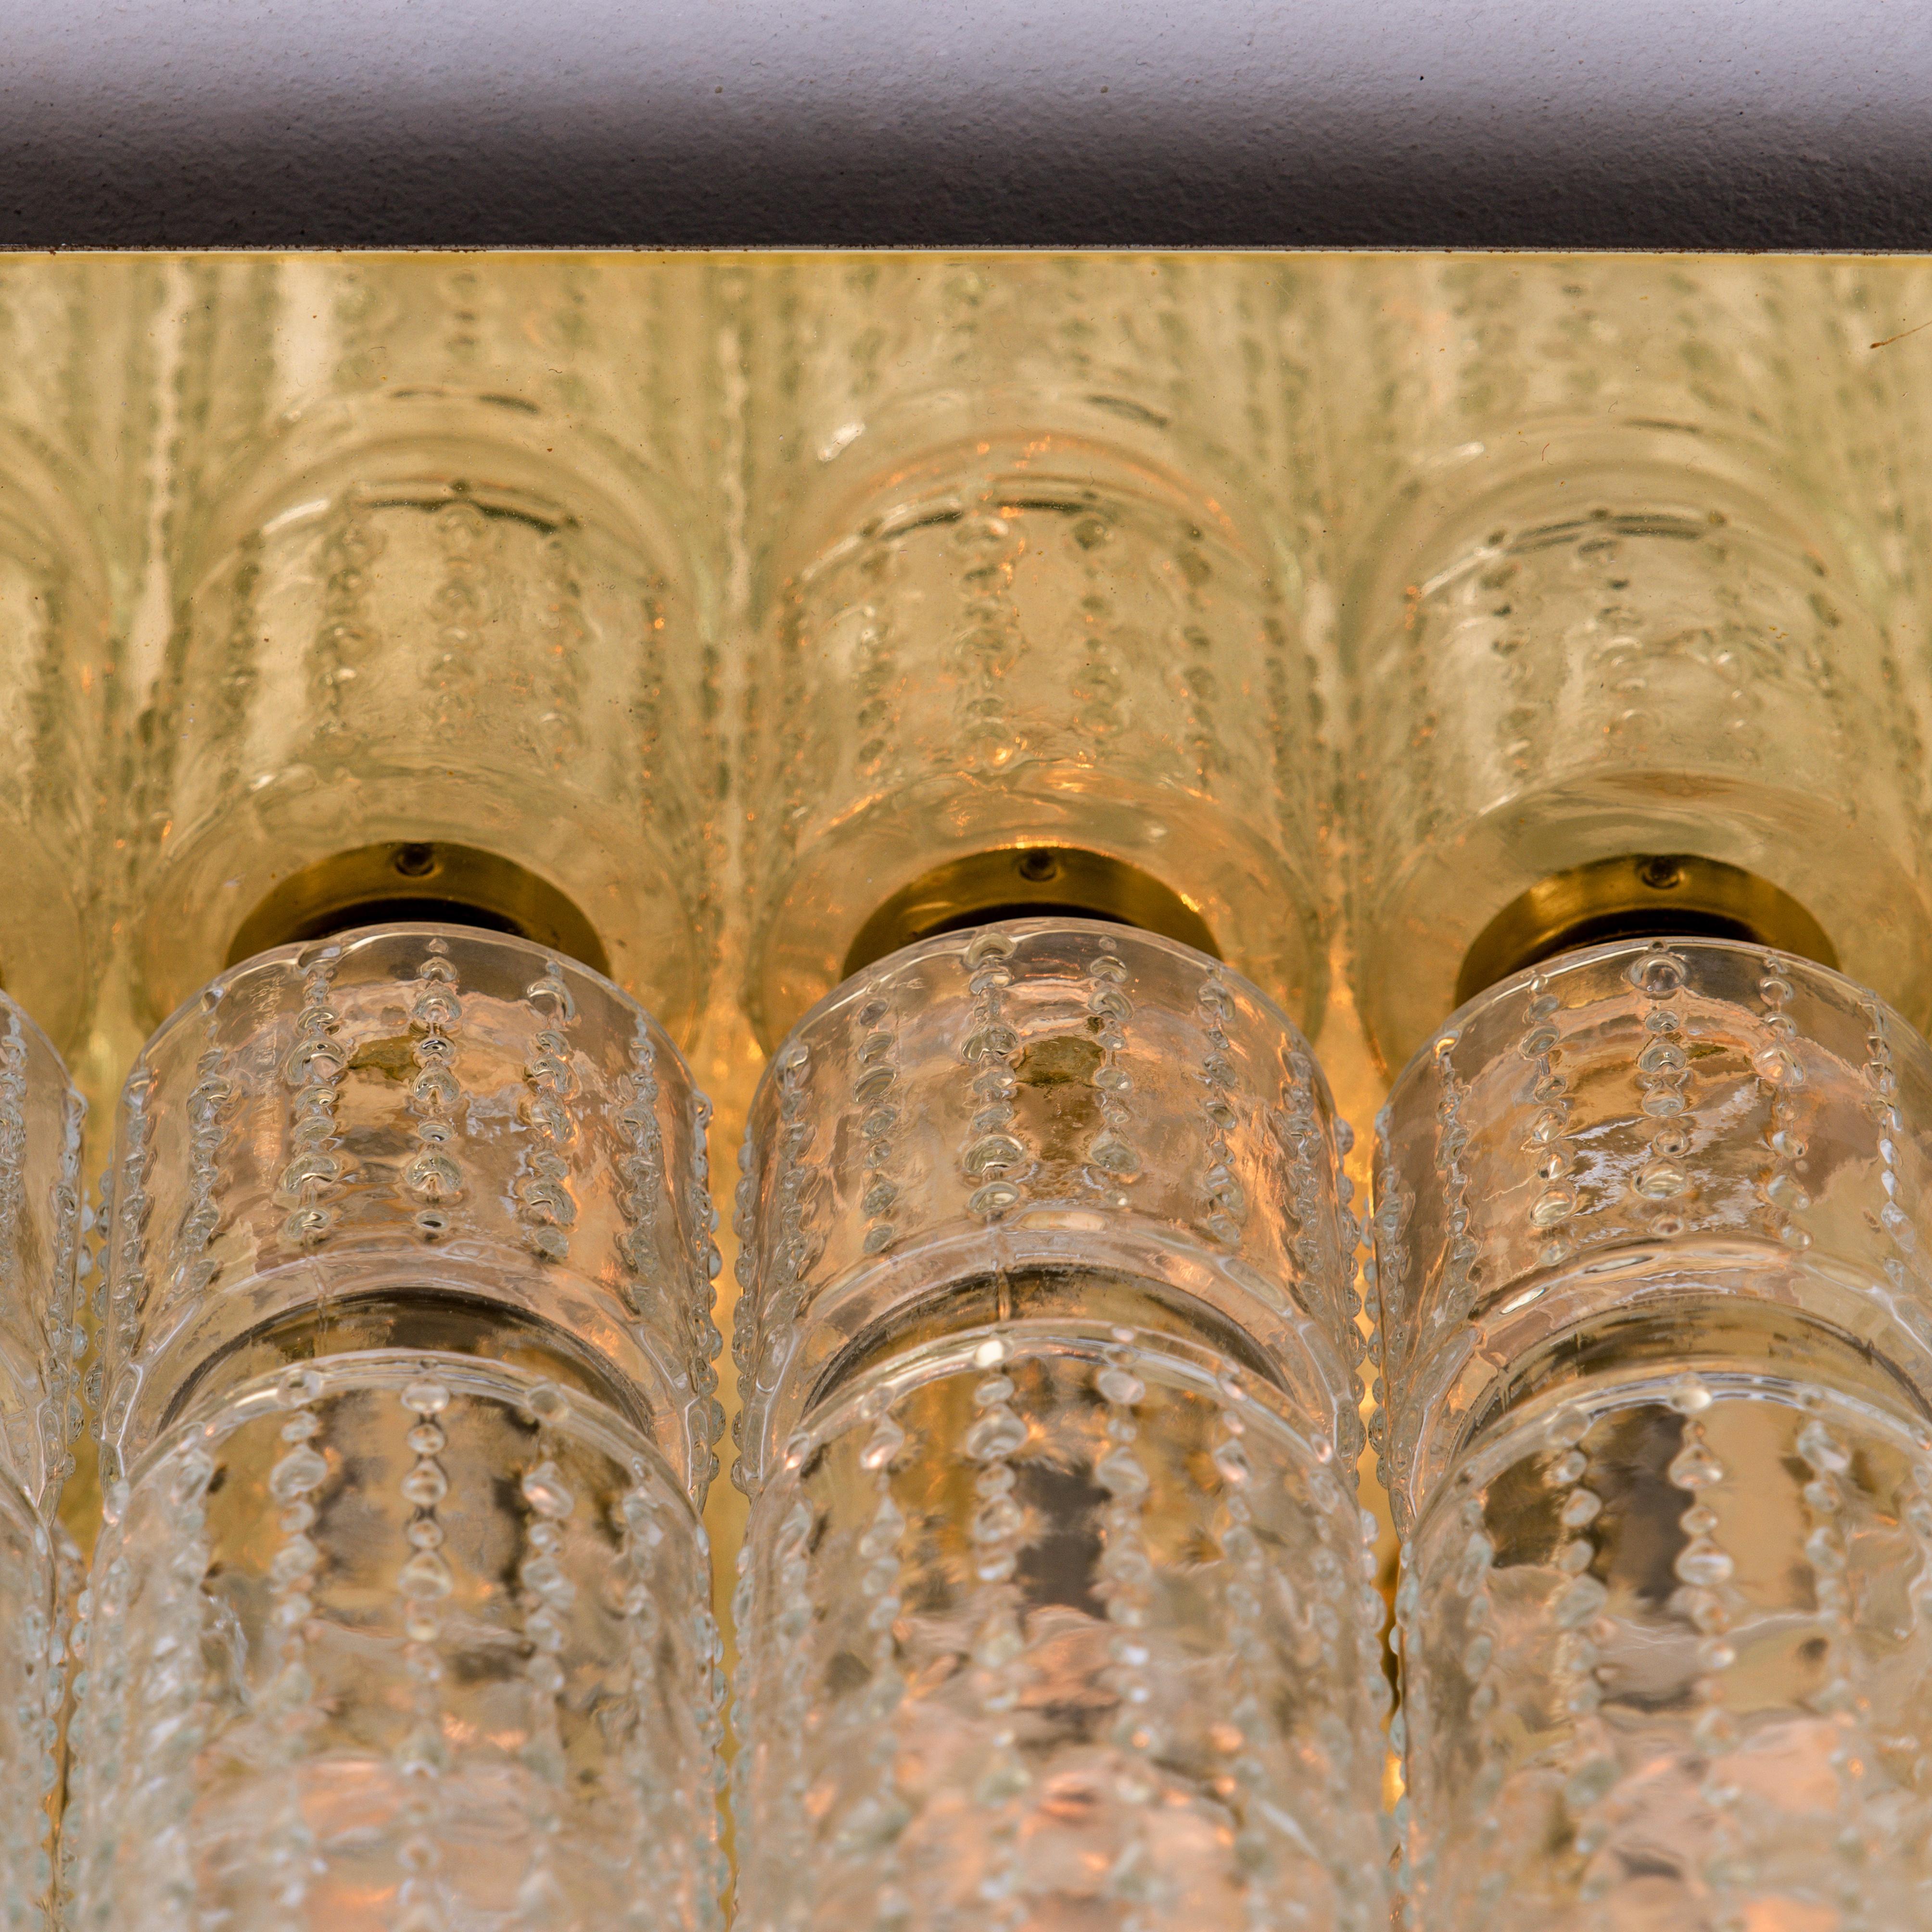 L'un des six étonnants lustres à encastrer avec 24 prismes en verre creux texturé soufflé à la main, montés sur un cadre en laiton. Fabriqué par Glashütte Limburg en Allemagne, conçu par Boris Tabacoff dans les années 1970. Luminaires haut de gamme